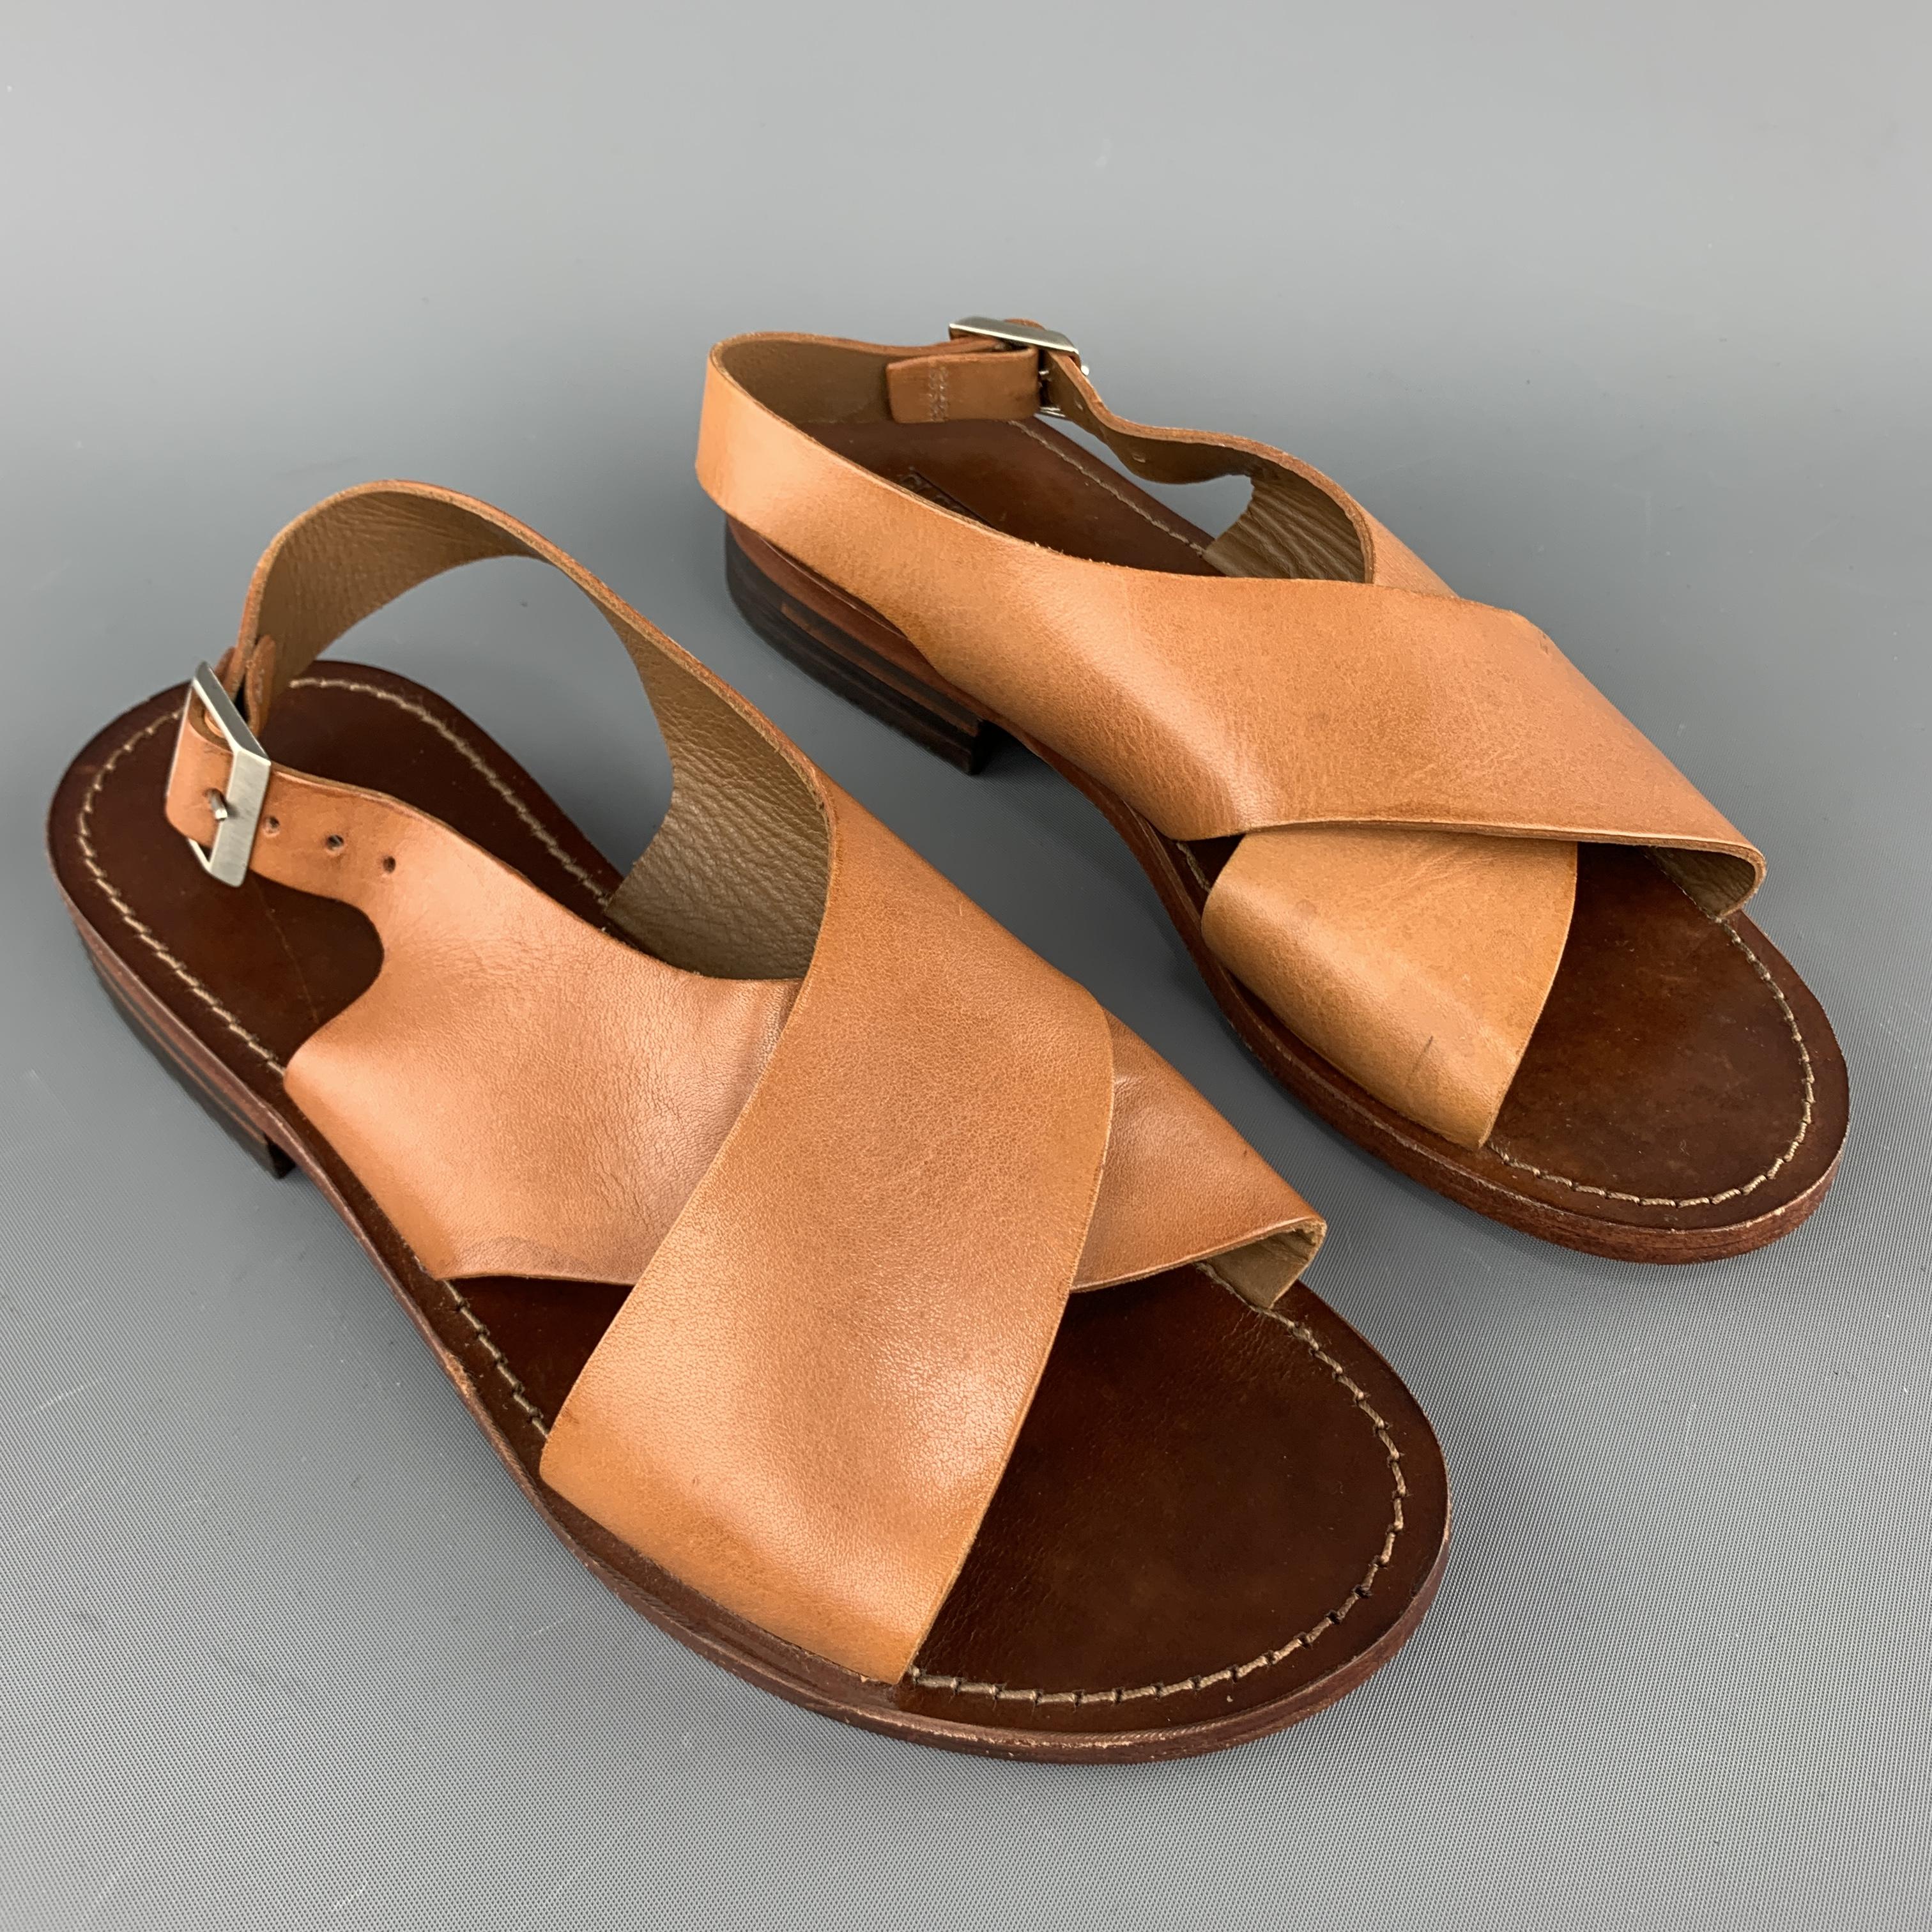 size 6 sandals